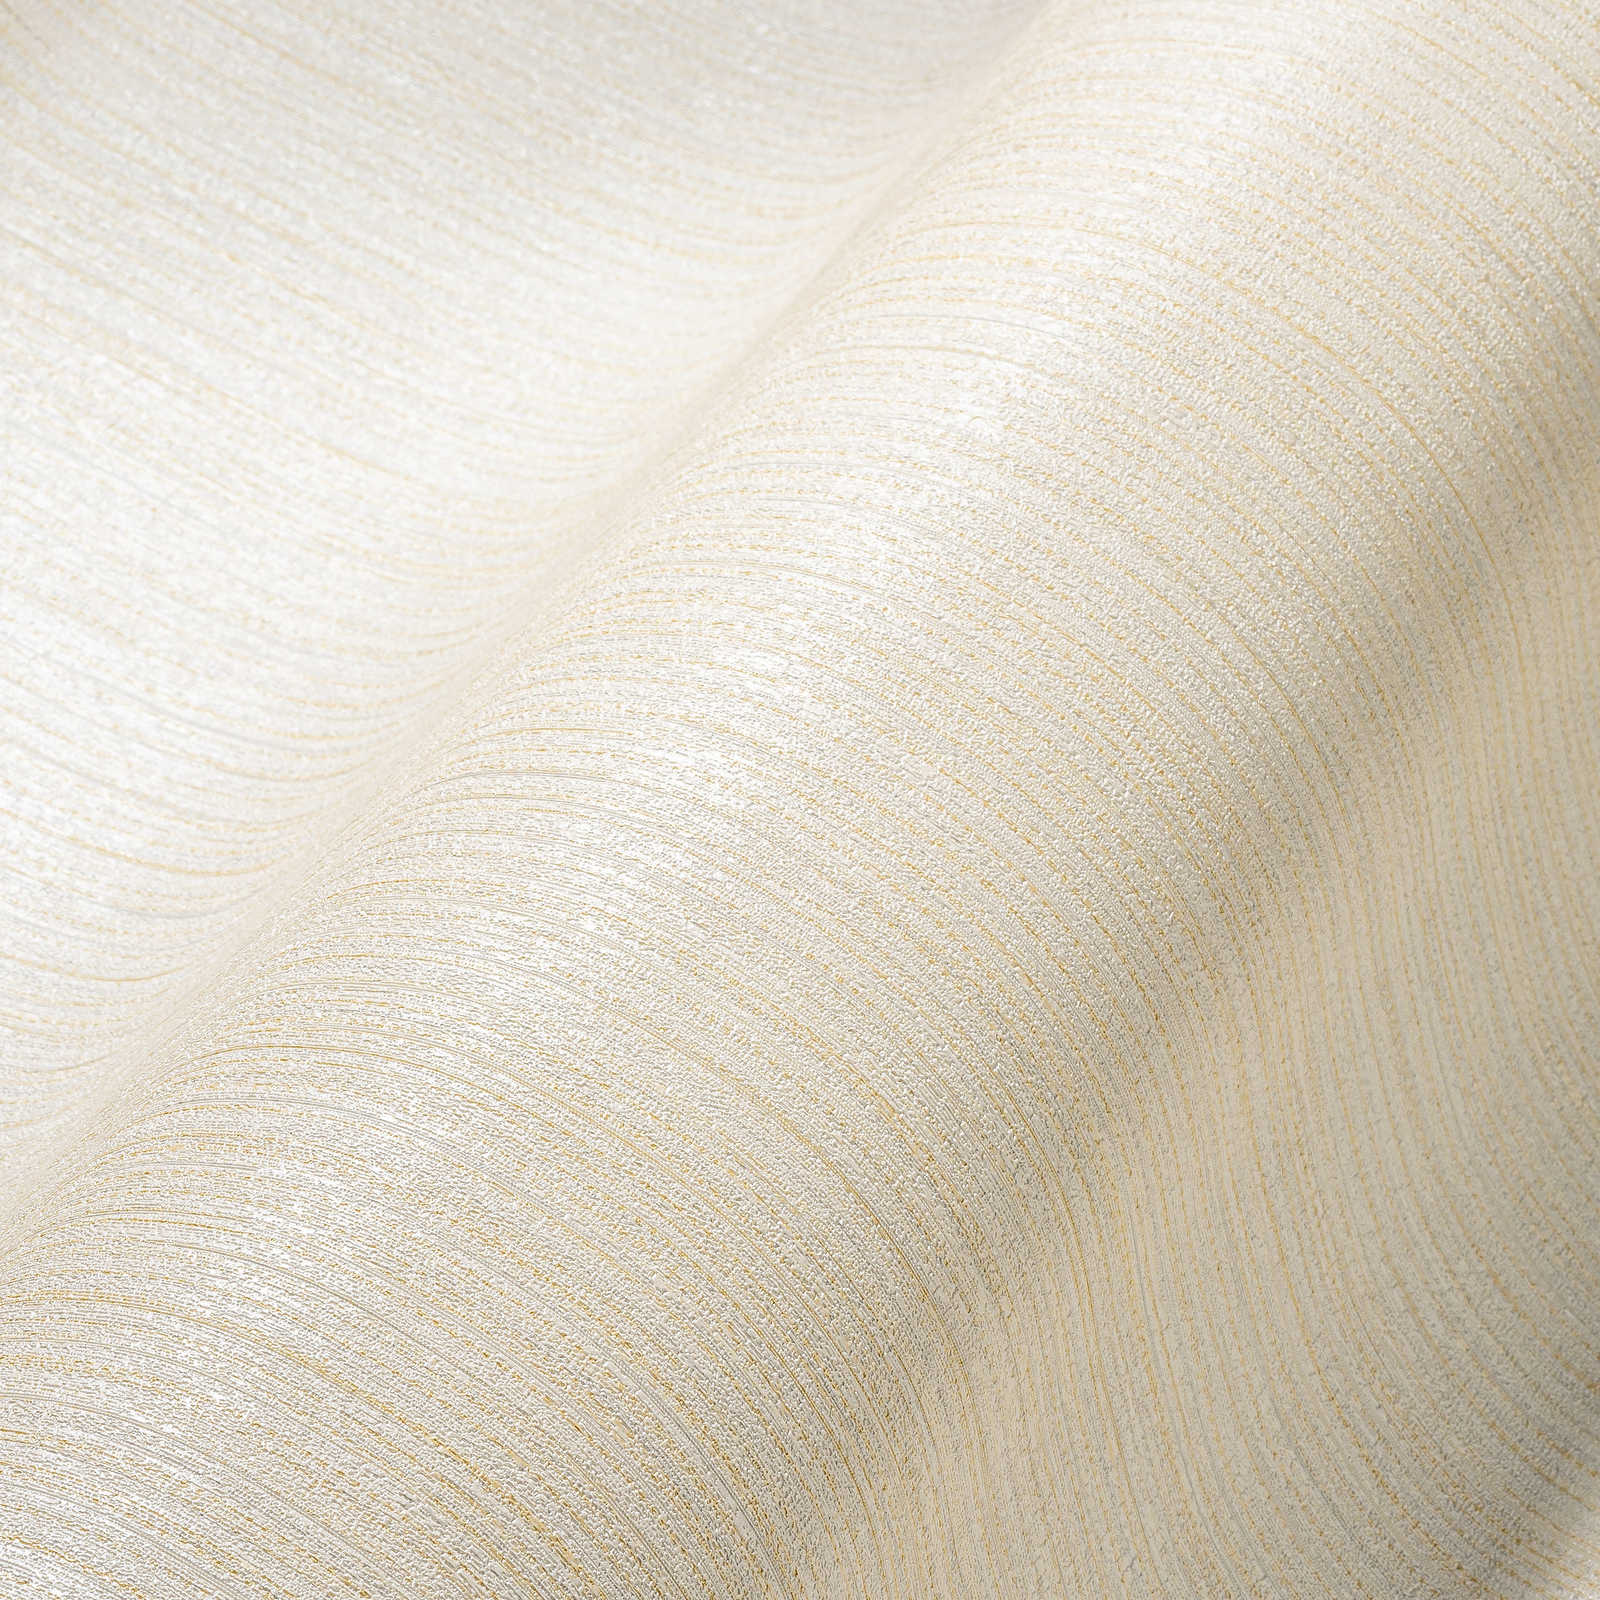             Effen ivoorkleurig behang met lijnstructuur - crème
        